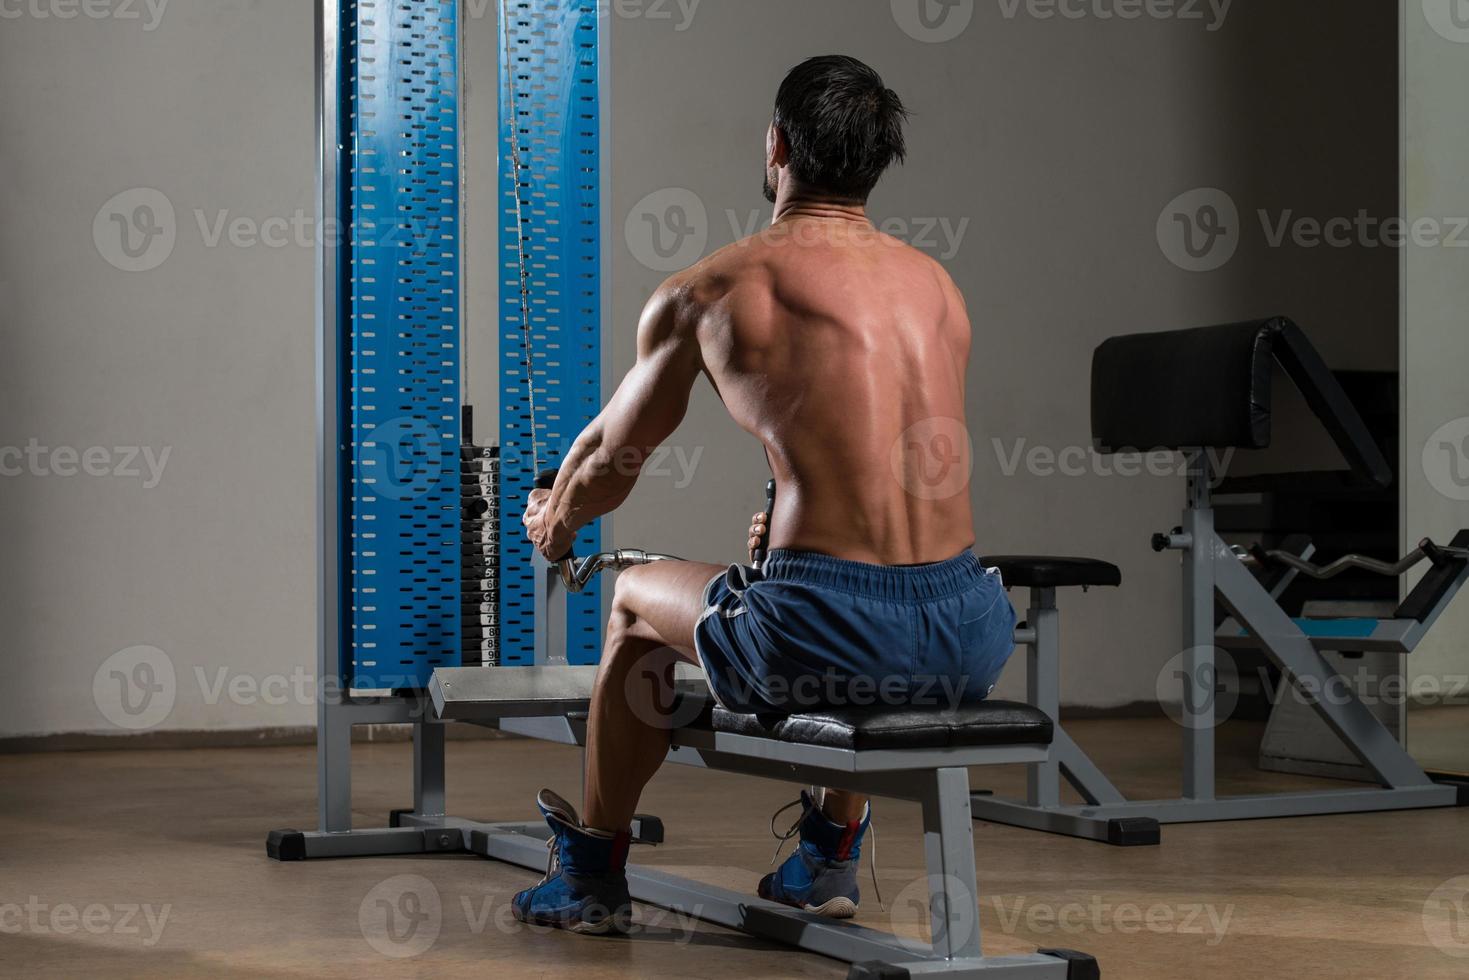 fitnessidrottare som gör övning med tung vikt för ryggen foto